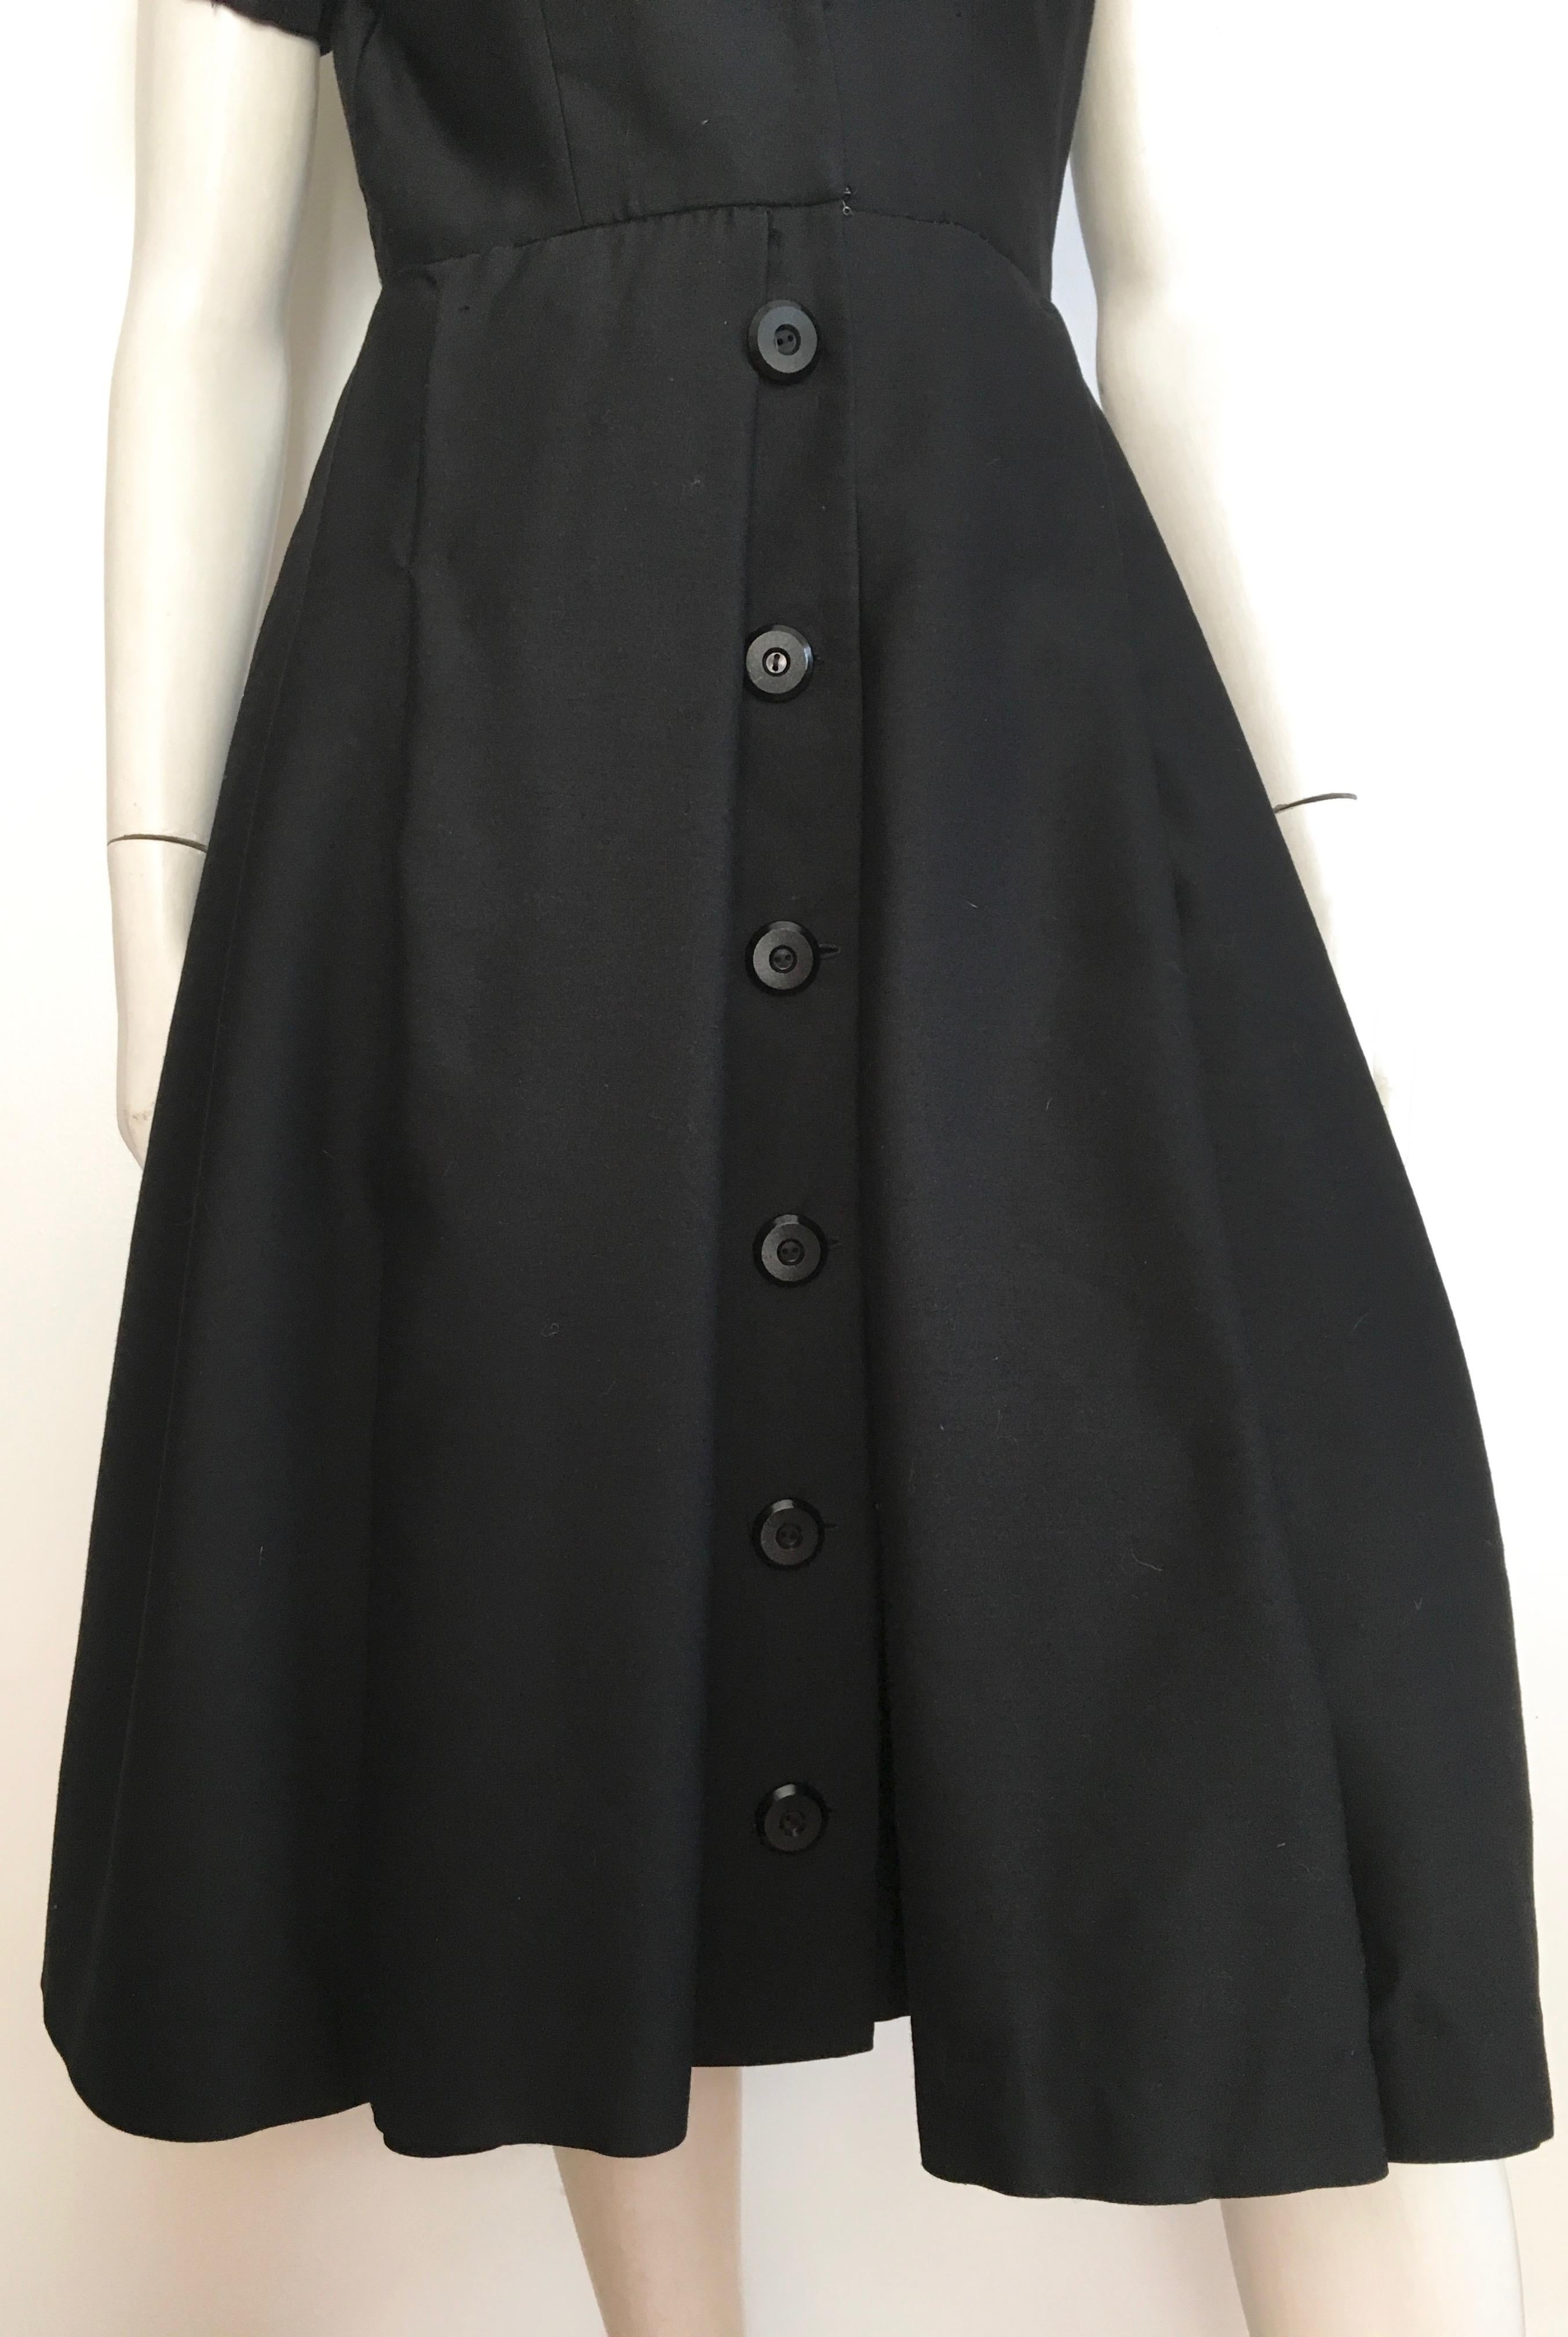 Suzy Perette 1950s Little Black Dress Size 4. For Sale 1